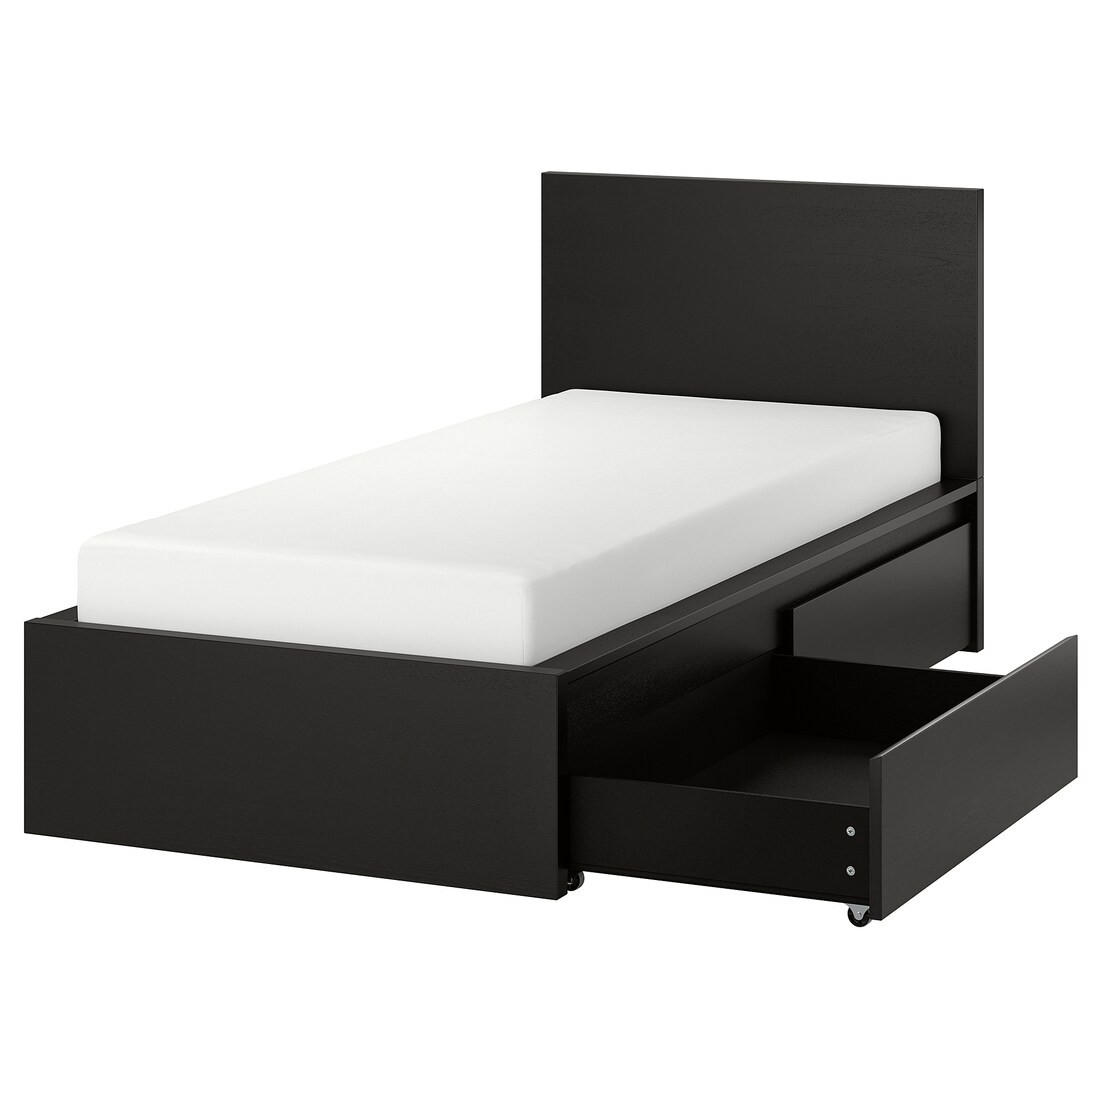 MALM МАЛЬМ Кровать односпальная с 2 ящиками, черно-коричневый / Lindbåden, 90x200 см